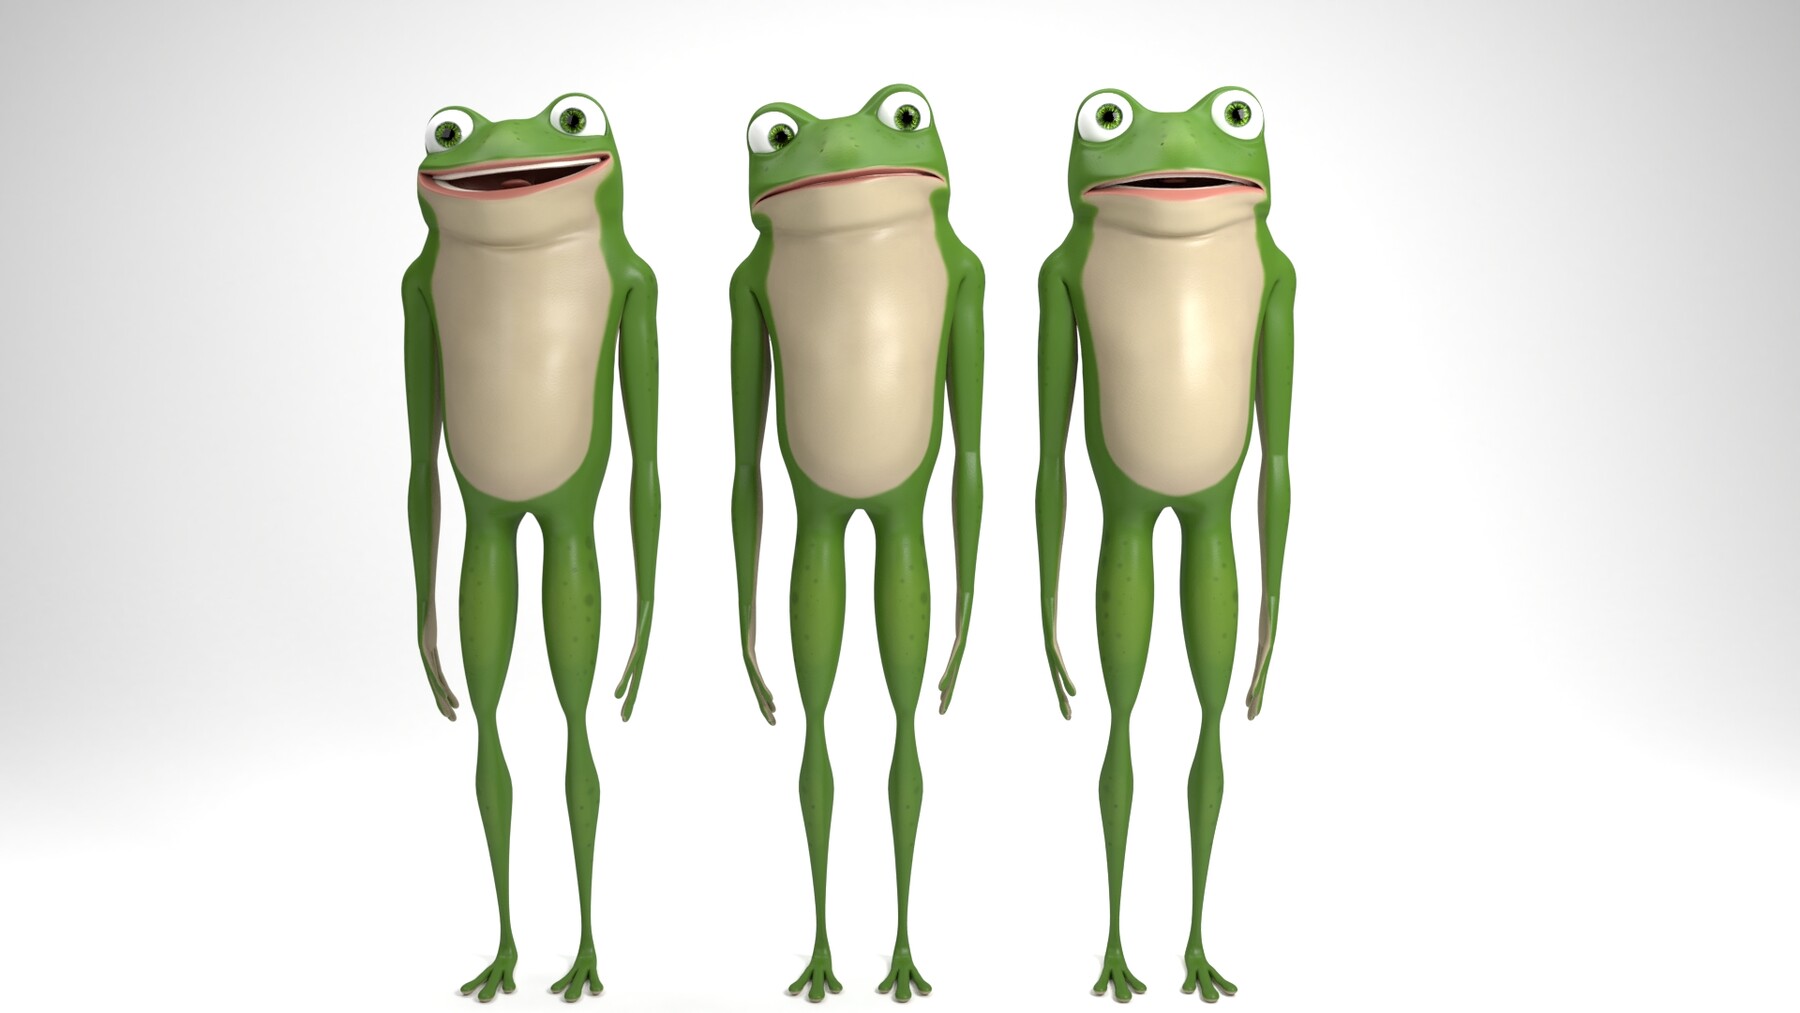 ArtStation - Cartoon frog | Resources